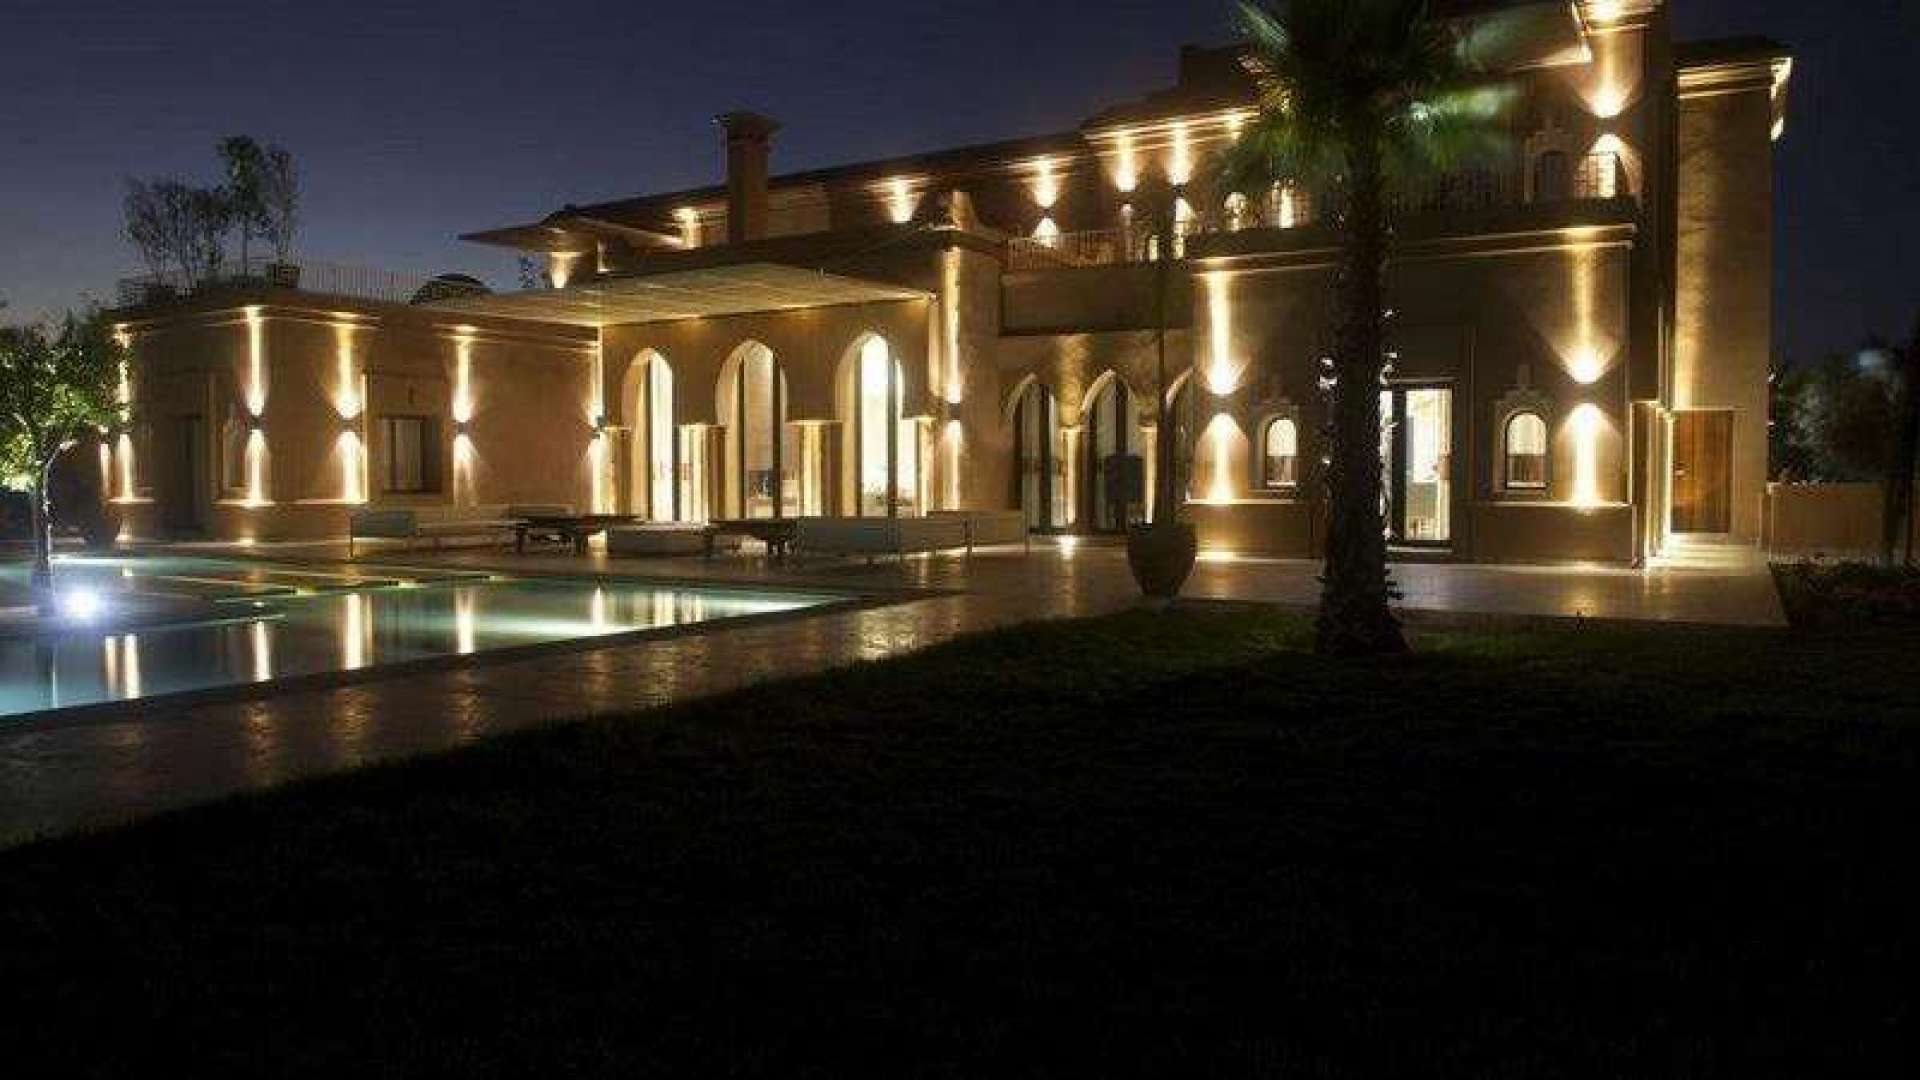 Vente,Villa,Propriété privée de 6 suites avec piscine chauffée sur 1 hectare de jardin ,Marrakech,Bab Atlas